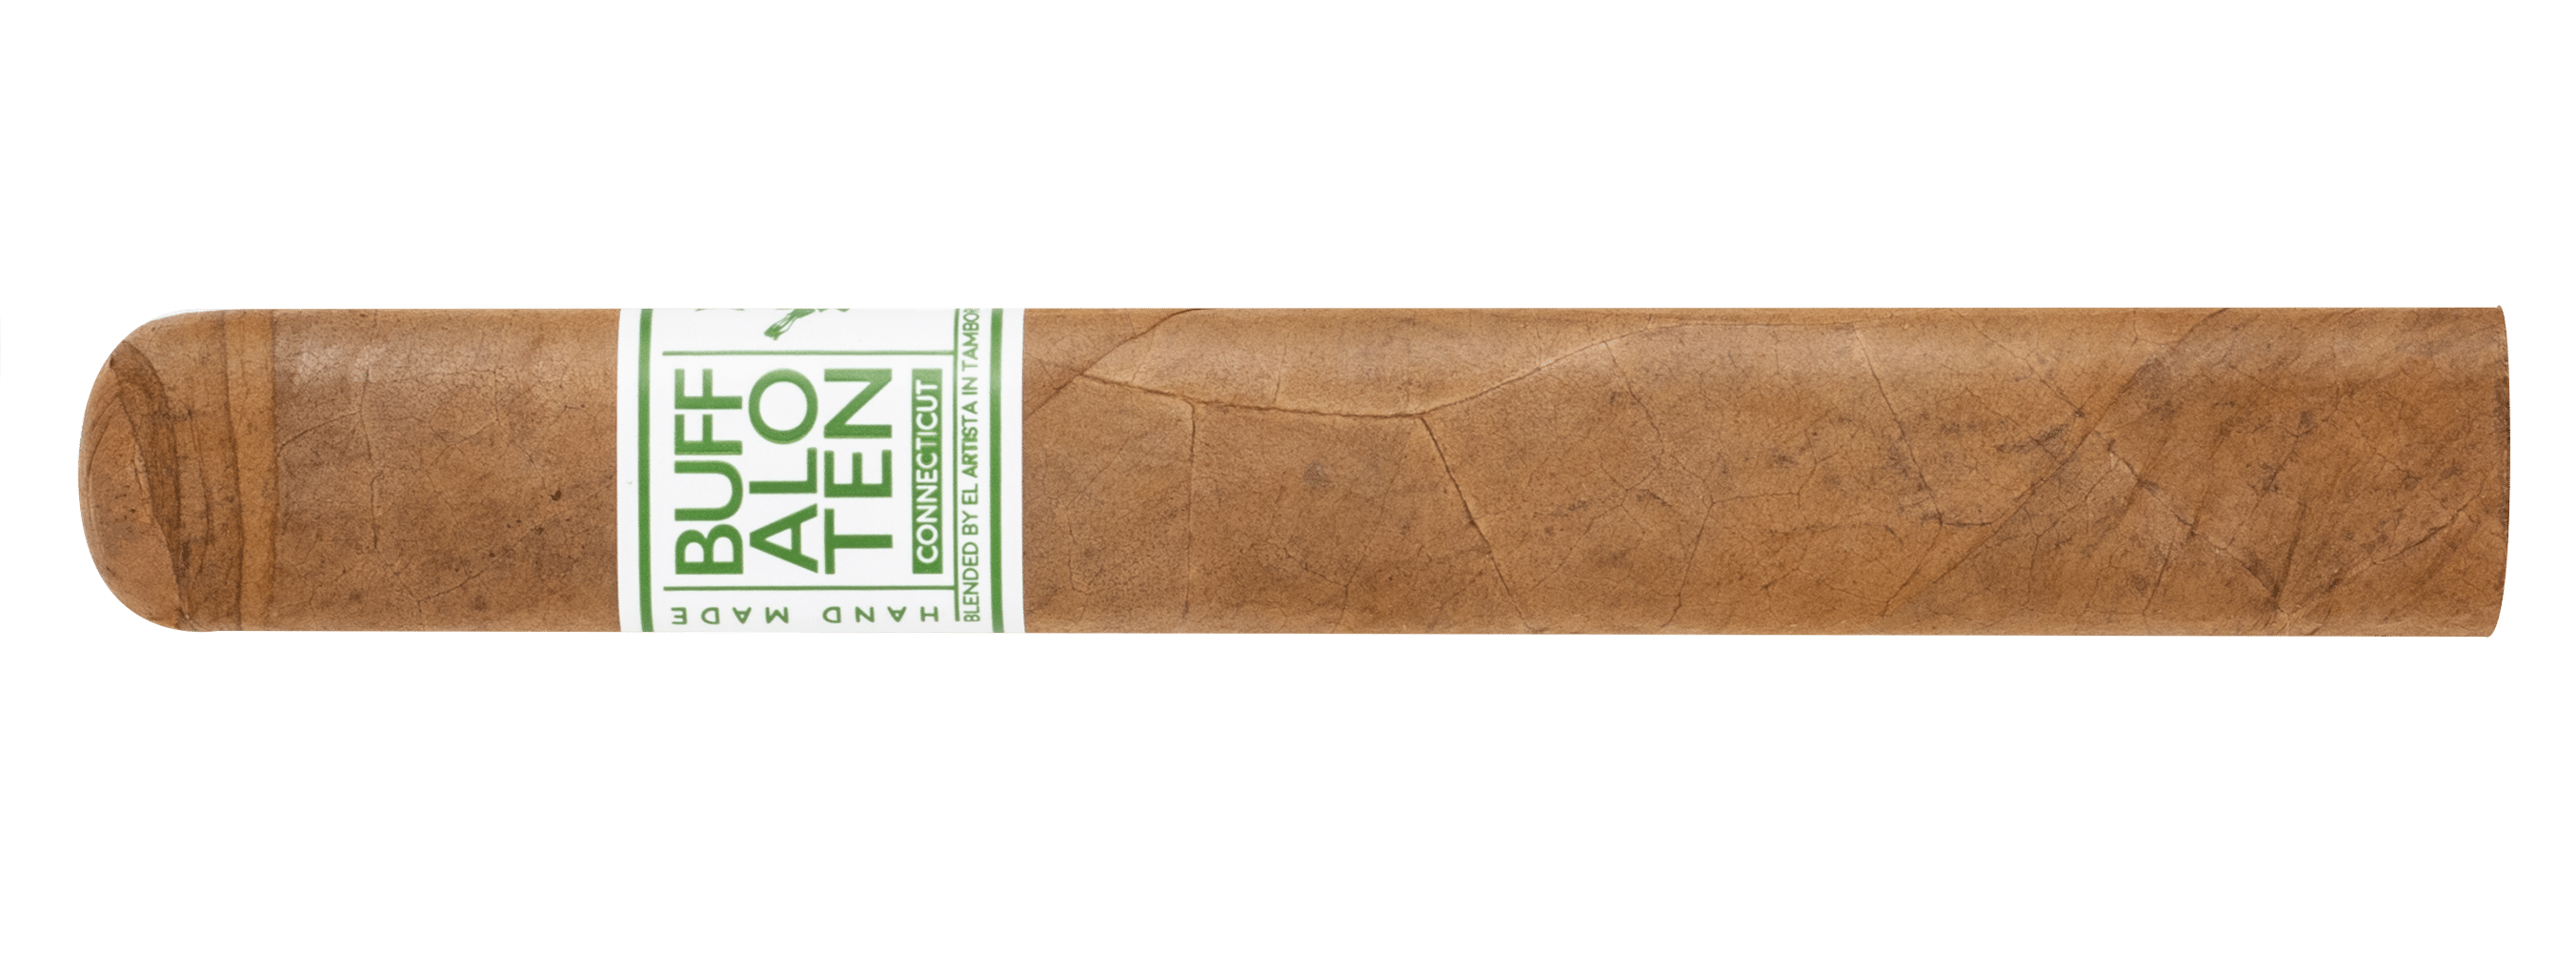 El Artista Announces Buffalo TEN Connecticut - Cigar News